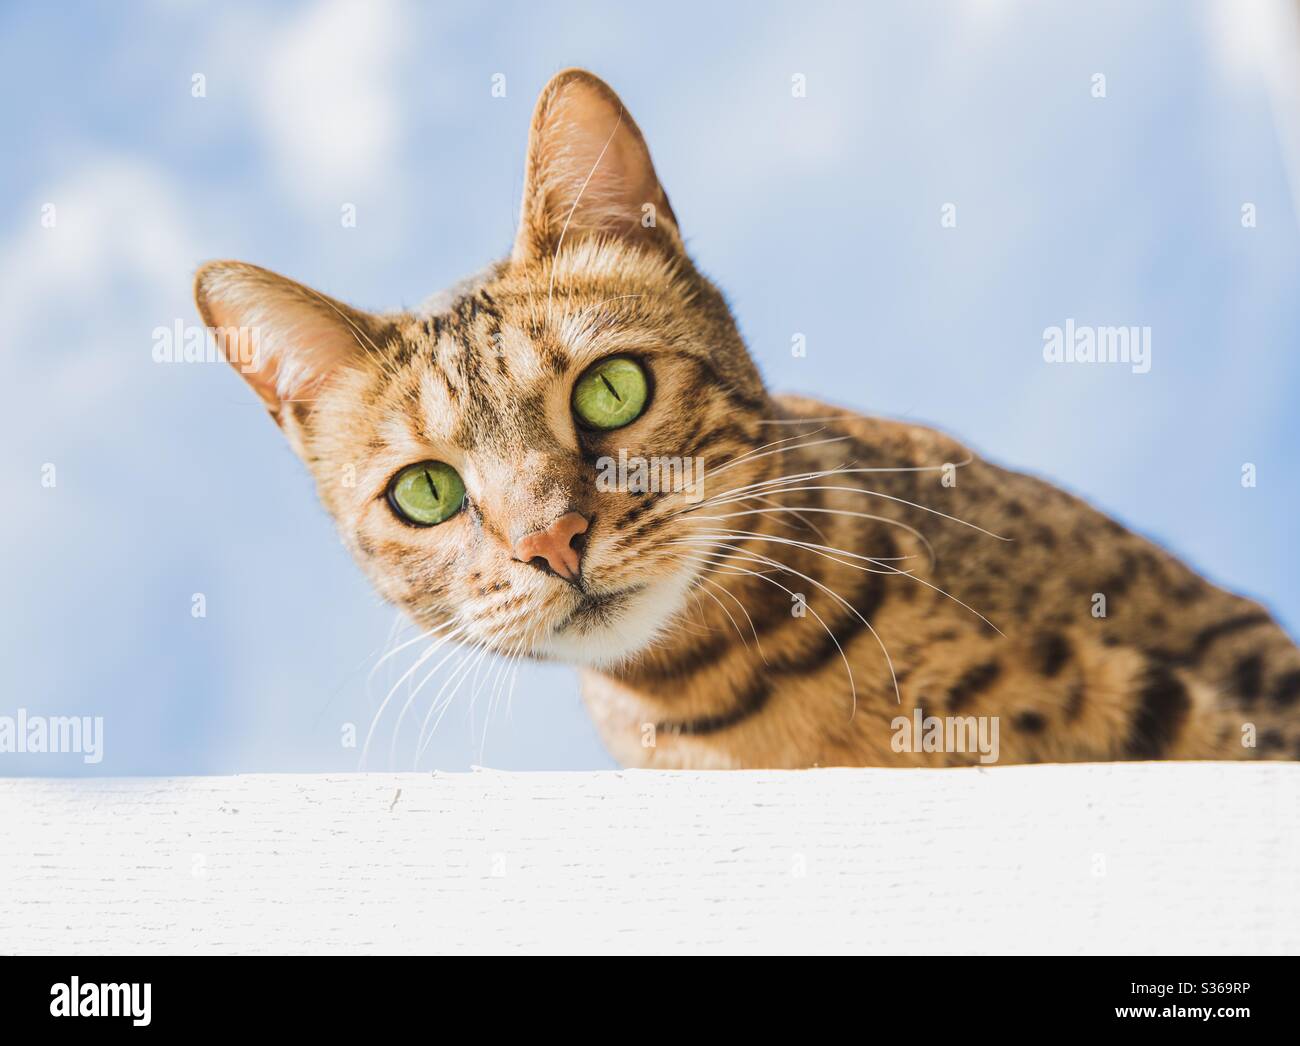 Eine neugierige Bengalkatze mit großen grünen Augen und streifigem Fell wie eine Tabby-Katze vor blauem Himmel Stockfoto